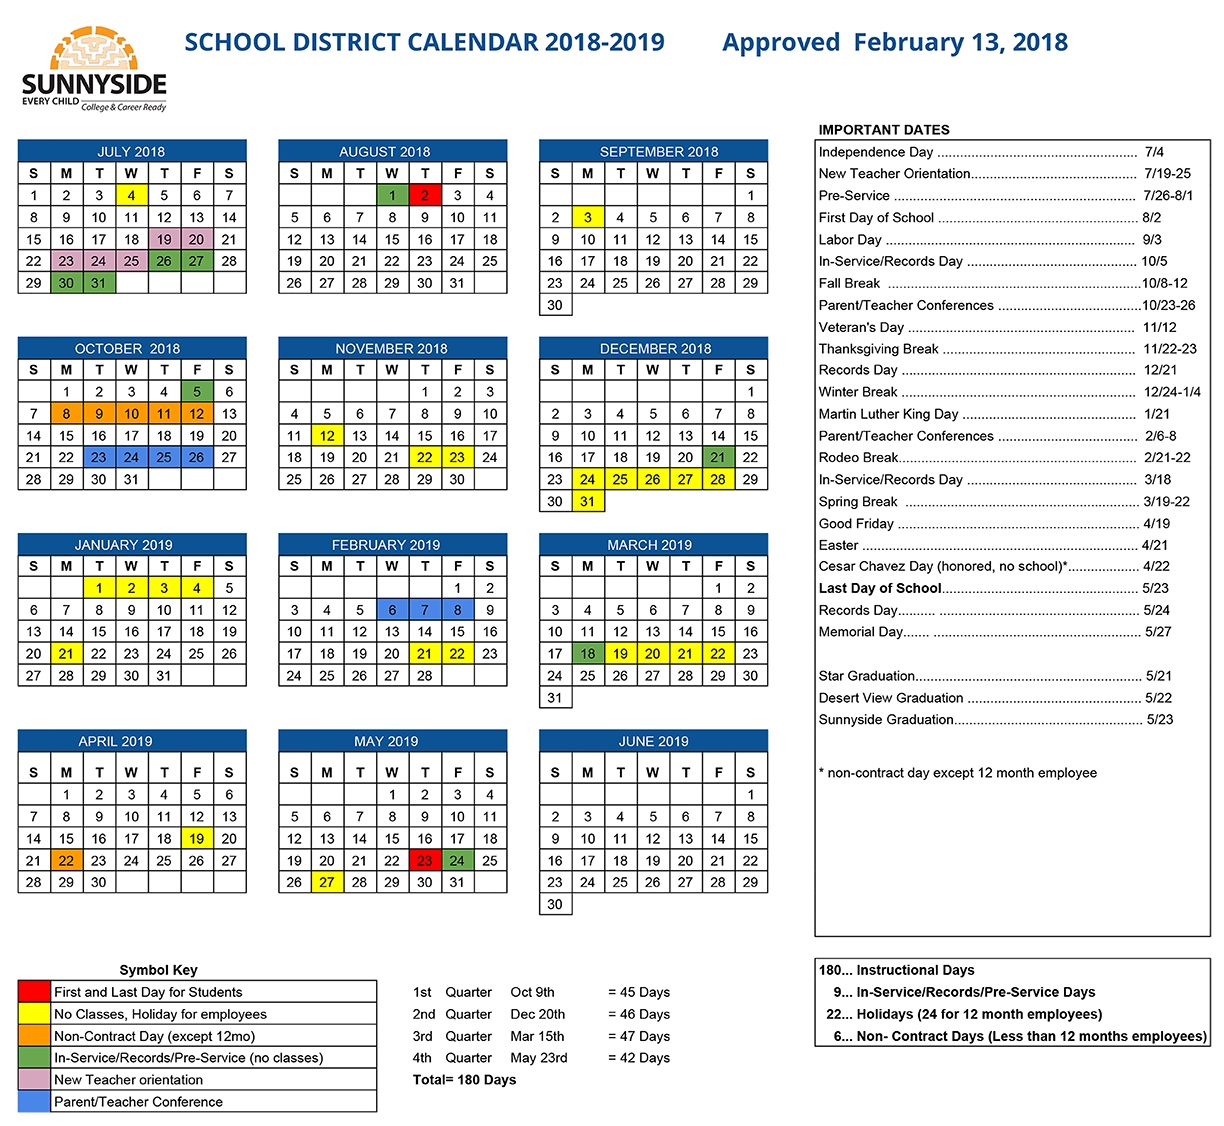 Usd Academic Calendar Qualads